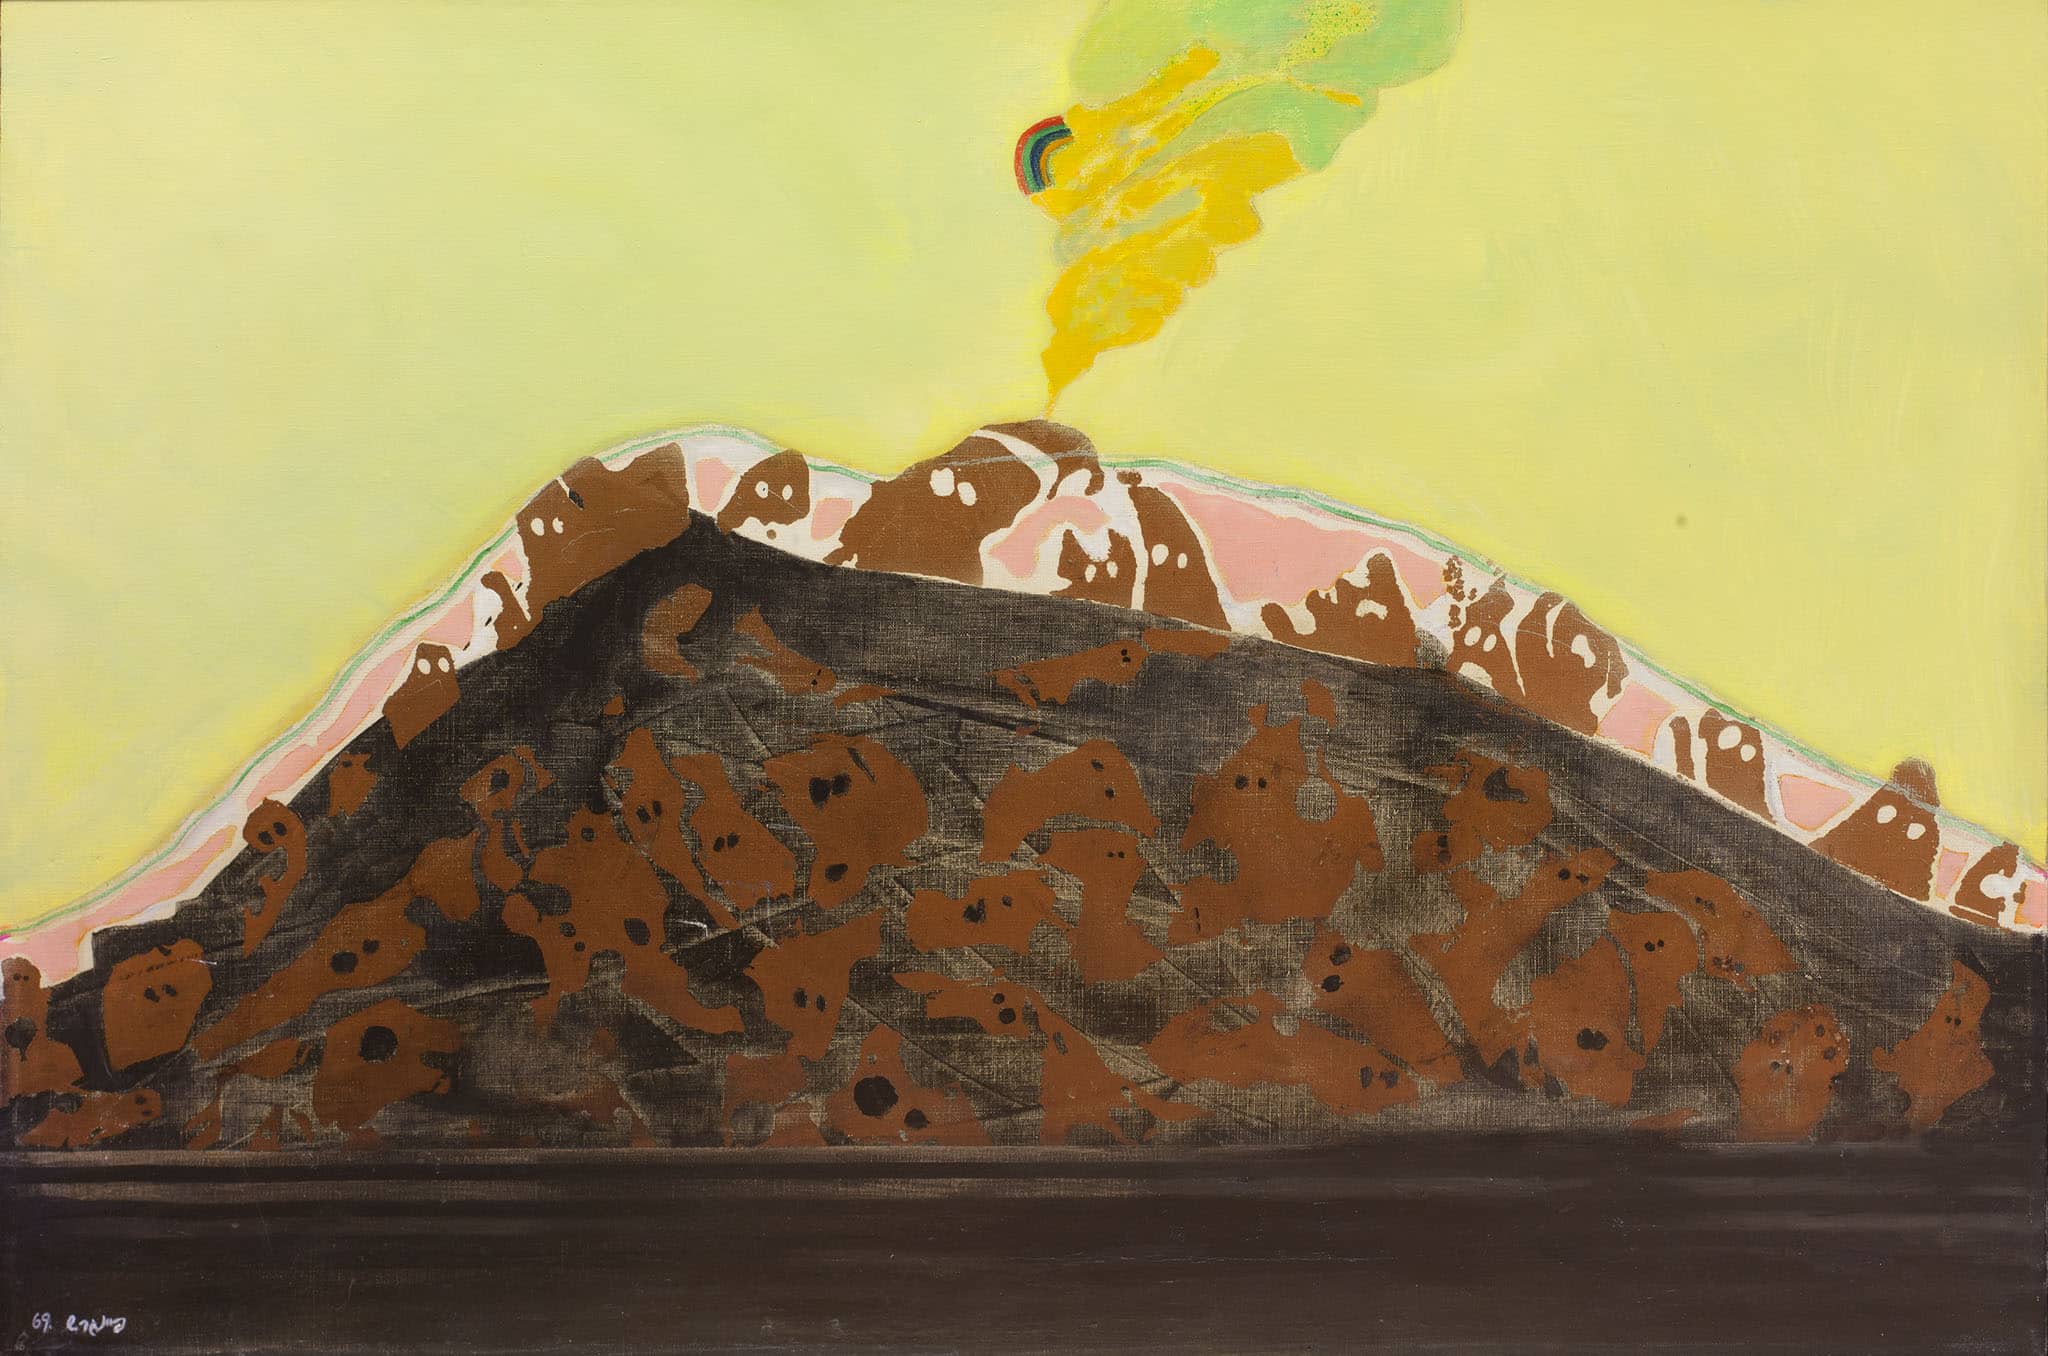 עודד פיינגרש, "פנטומים ופצצת אטום", 1969, שמן על בד, 80x54 ס"מ